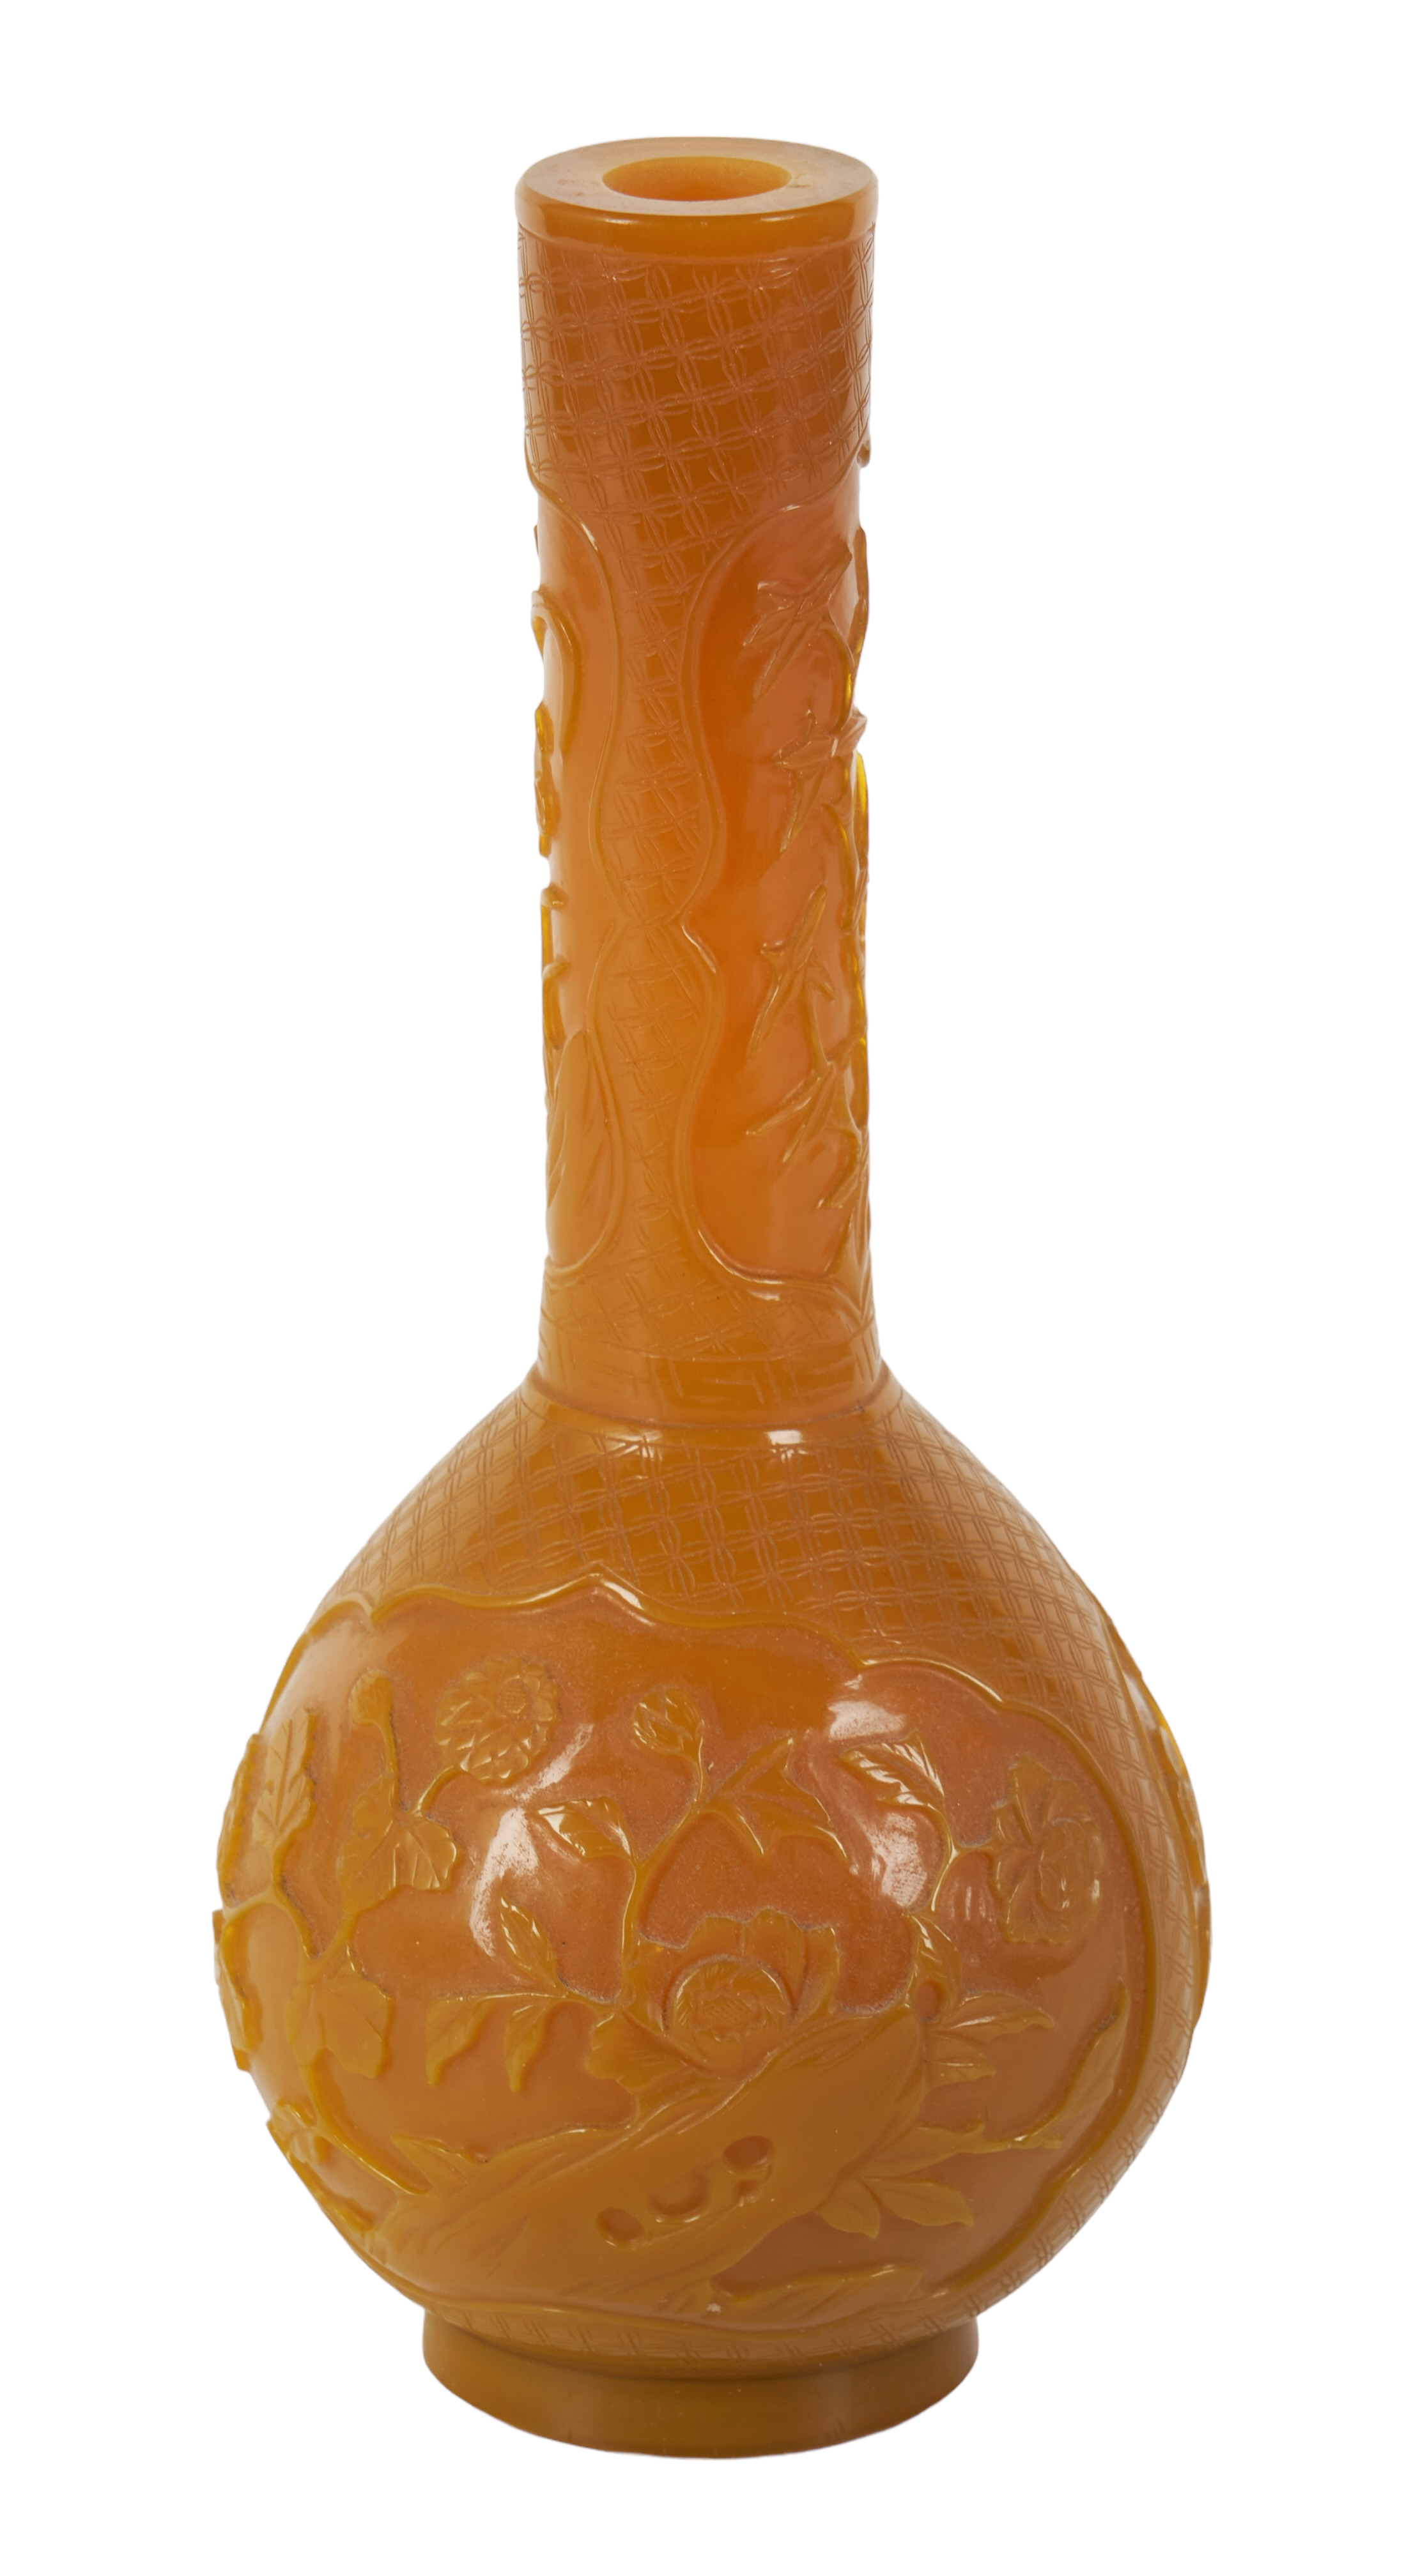 Chinese yellow Peking glass bottle 2e22d2